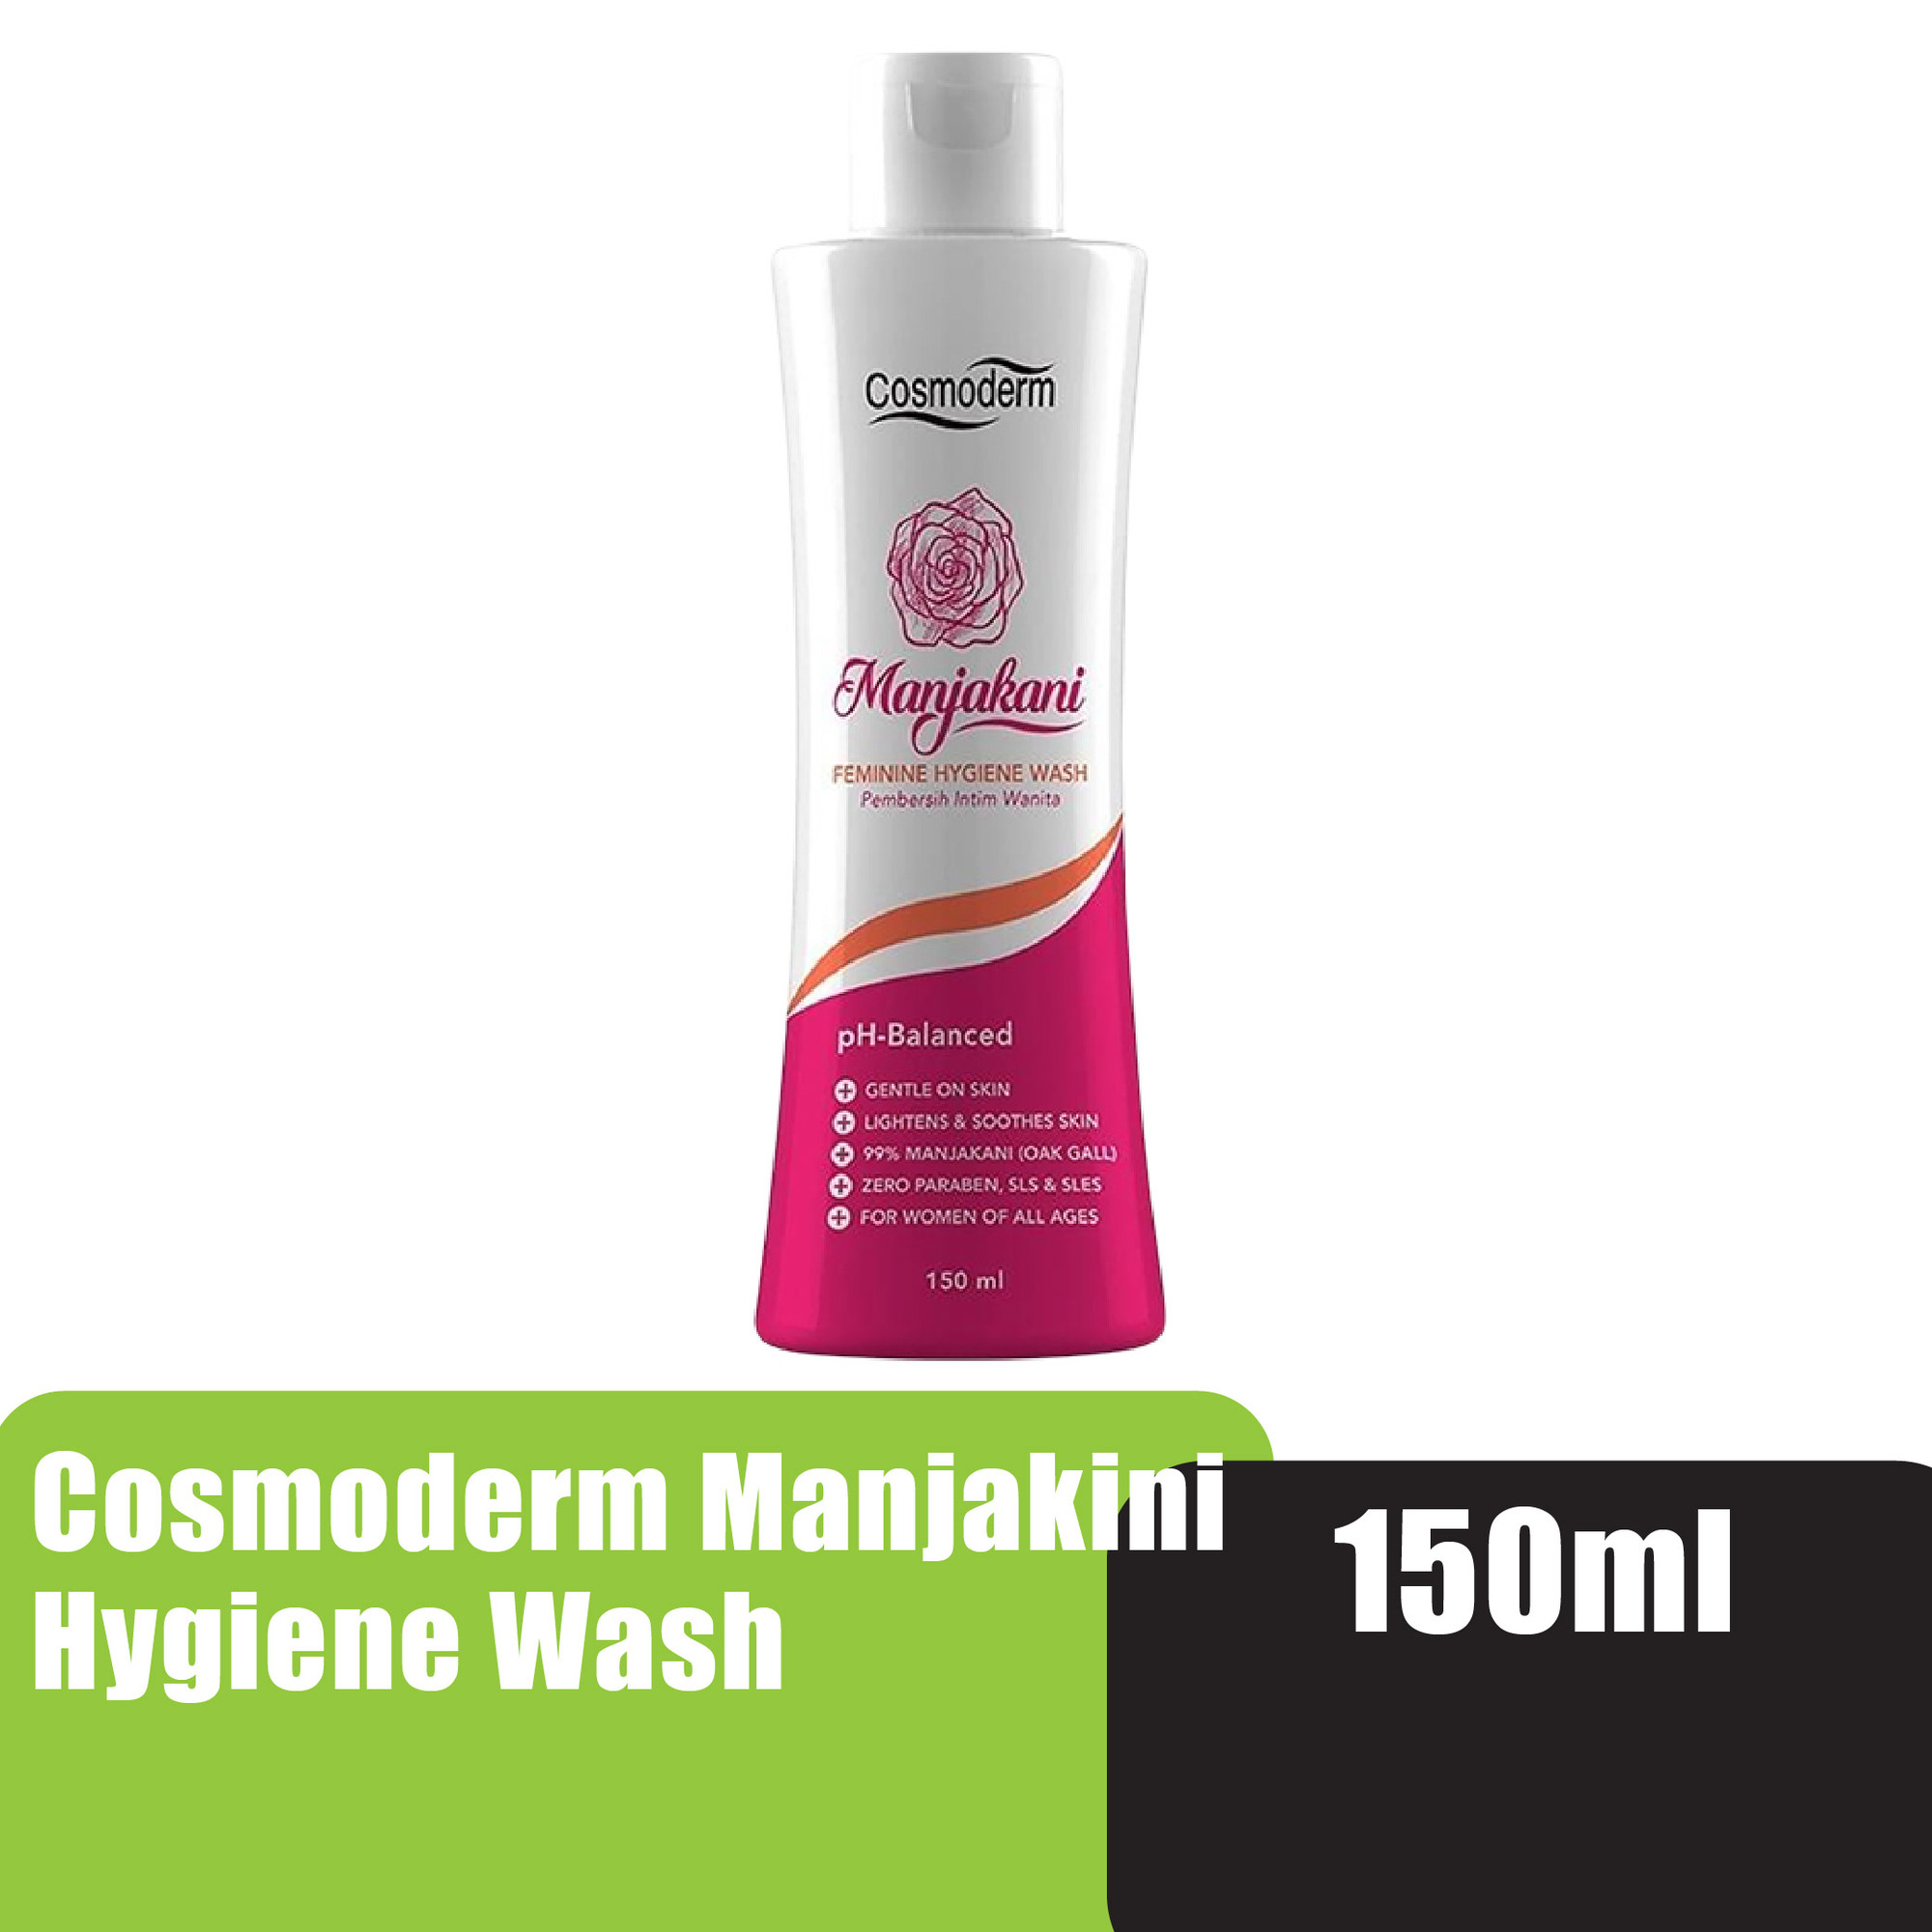 Cosmoderm Manjakani Hygiene Wash 150ml